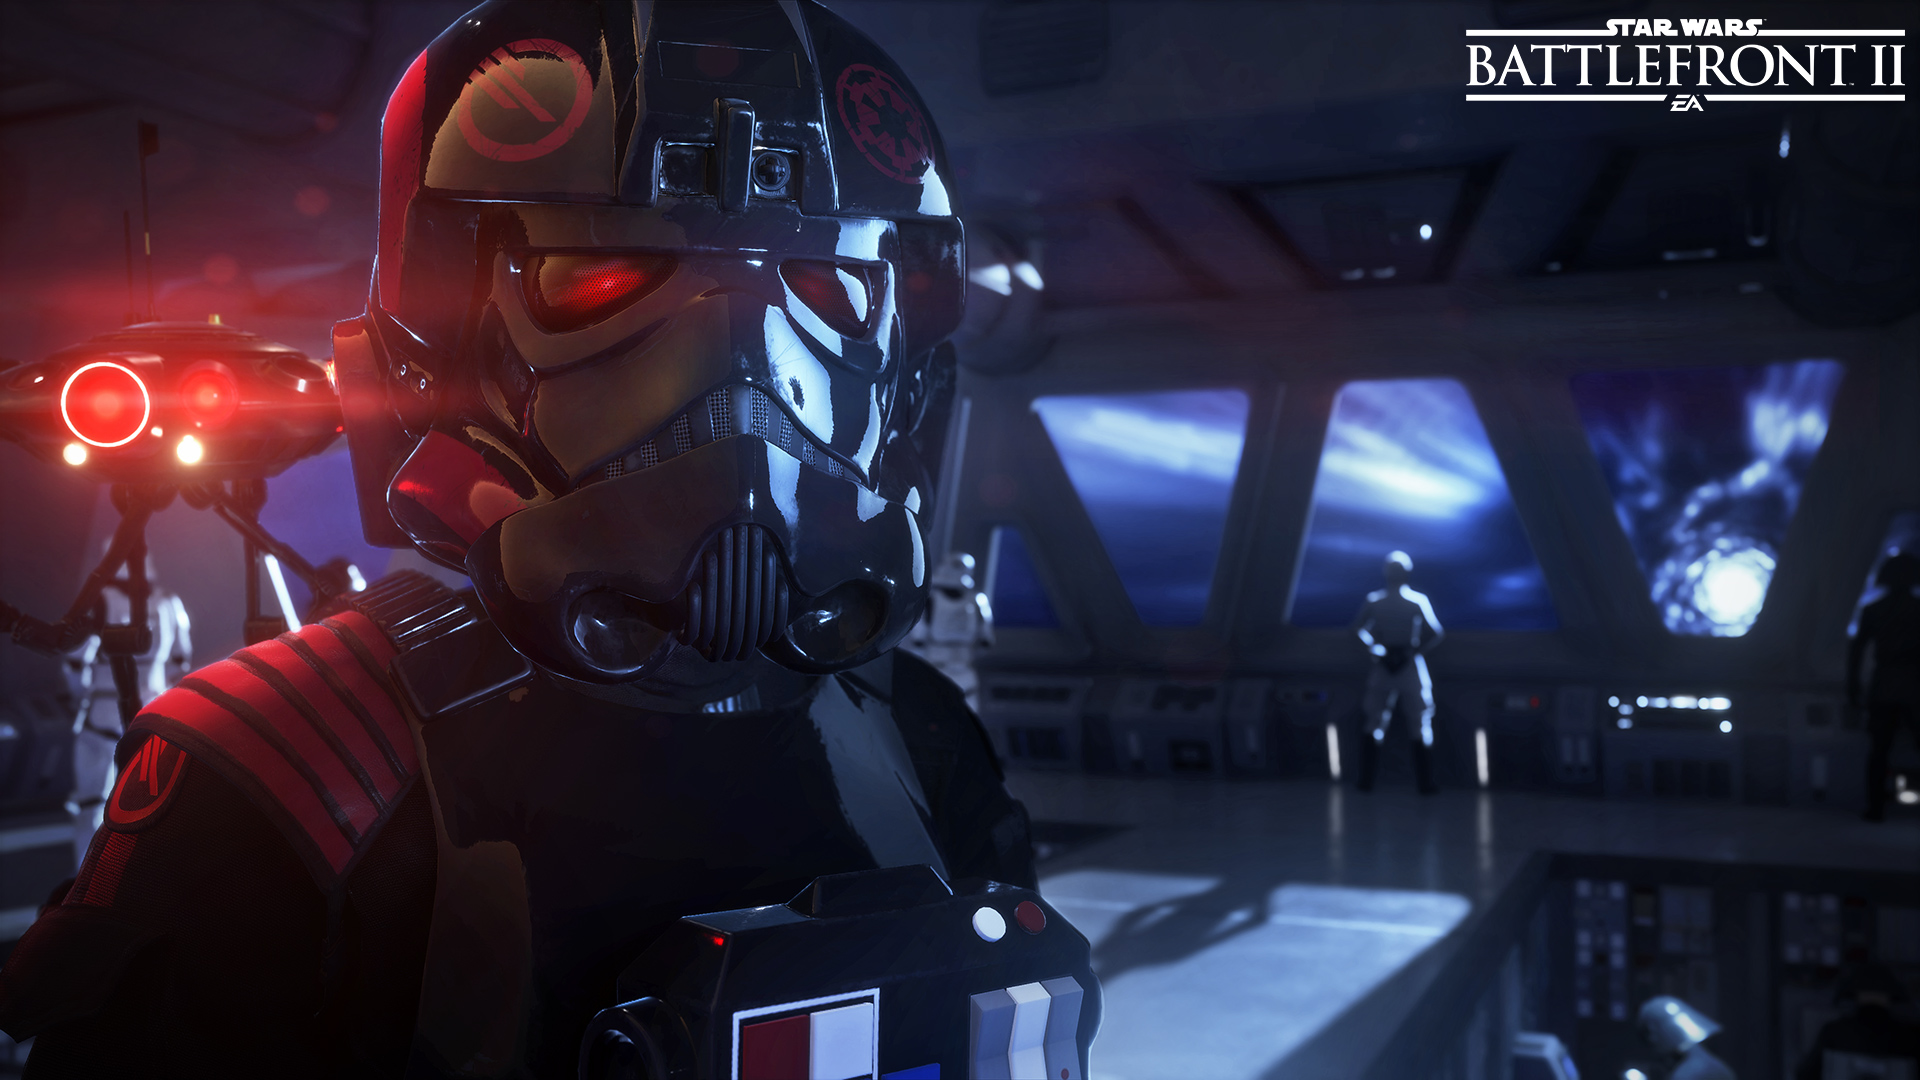 More Star Wars Battlefront Campaign Details Revealed